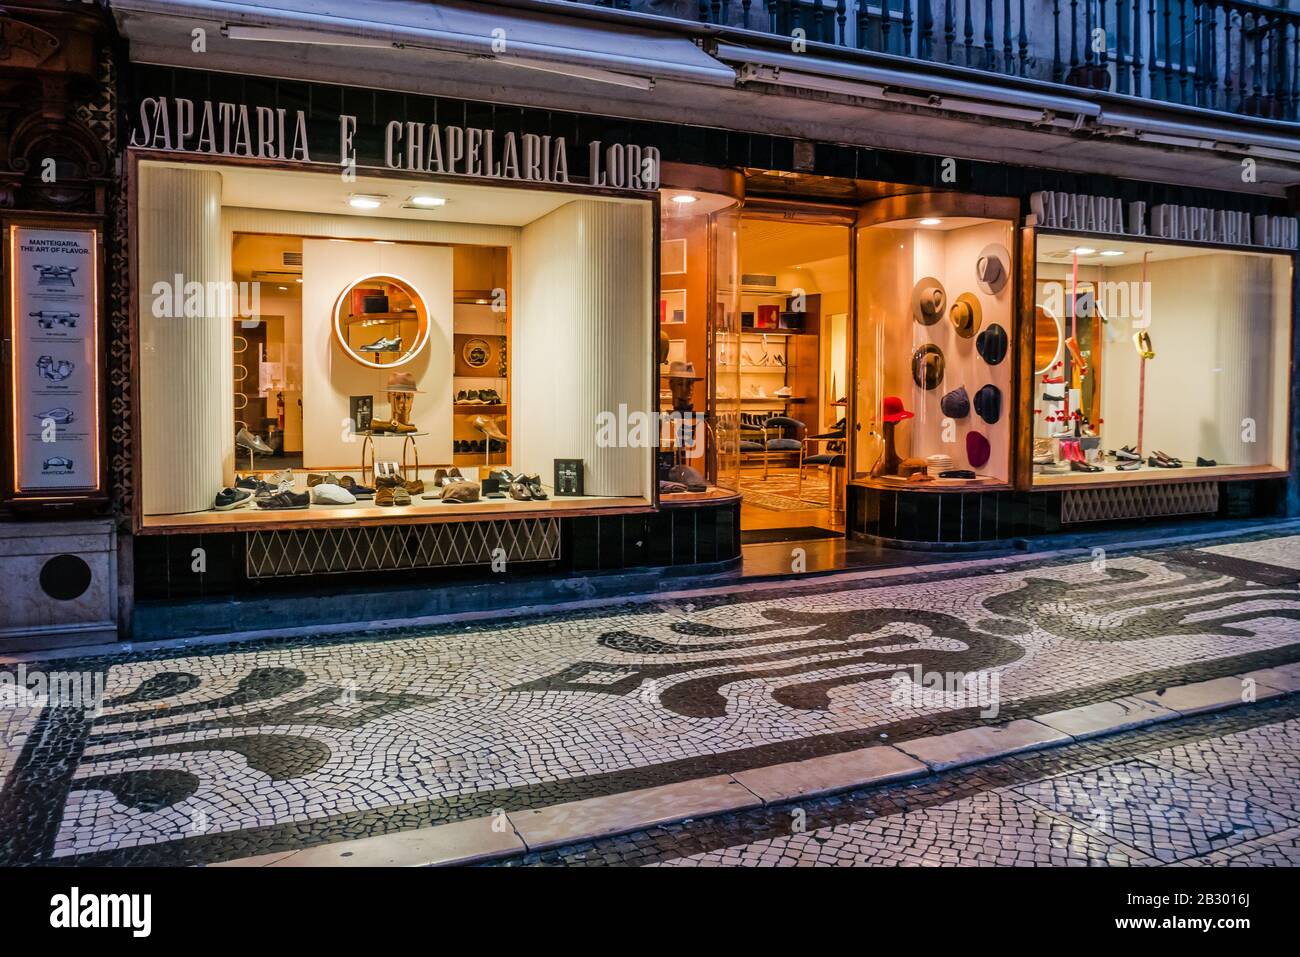 Sapataria e Chapelaria Lord est un magasin d'accessoires pour hommes et femmes sur Rua Augusta à Lisbonne. Il a un beau intérieur. Banque D'Images